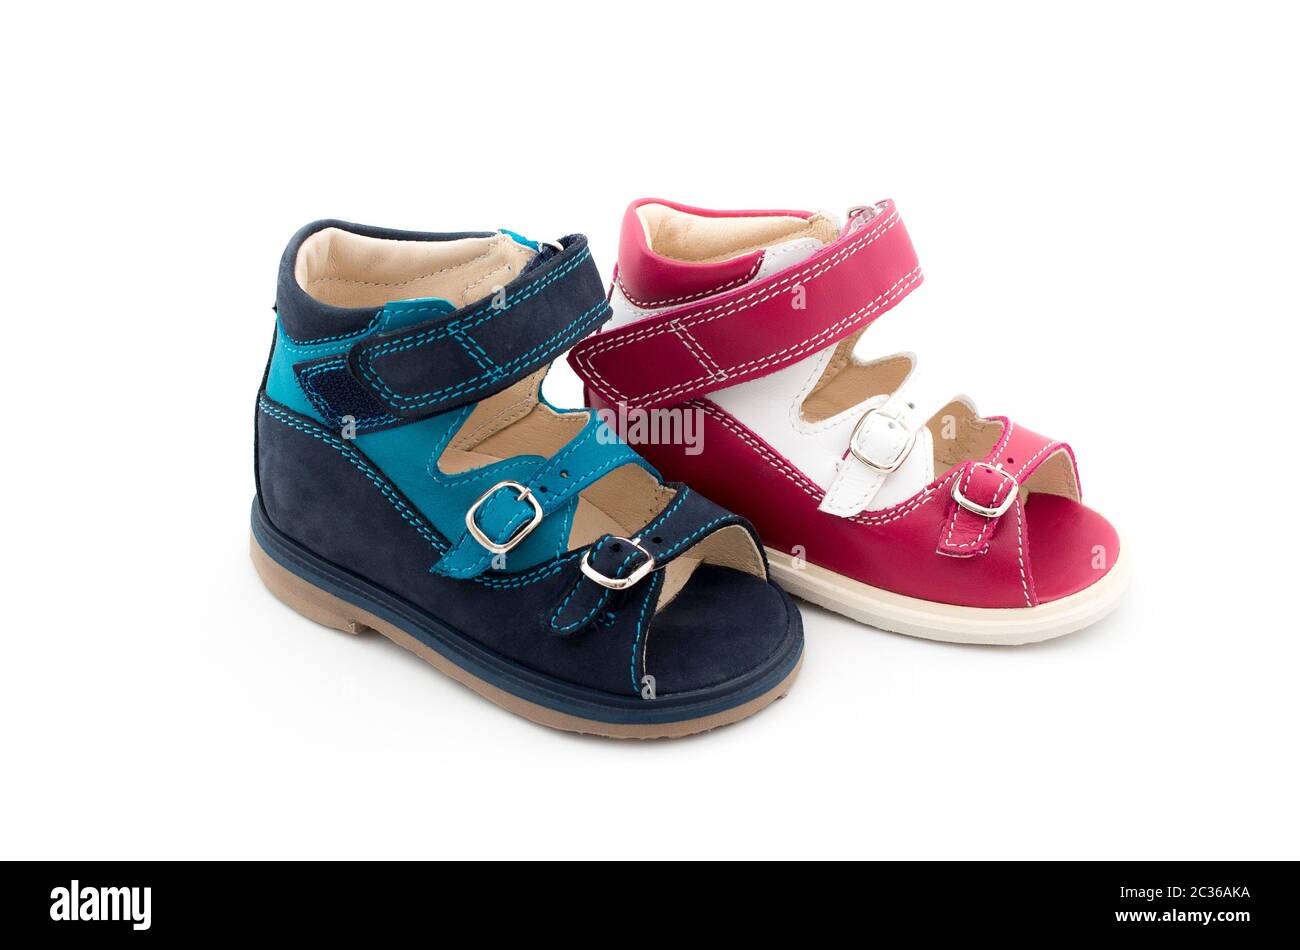 Deux couleurs différentes de chaussures pour bébés en cuir naturel Banque D'Images